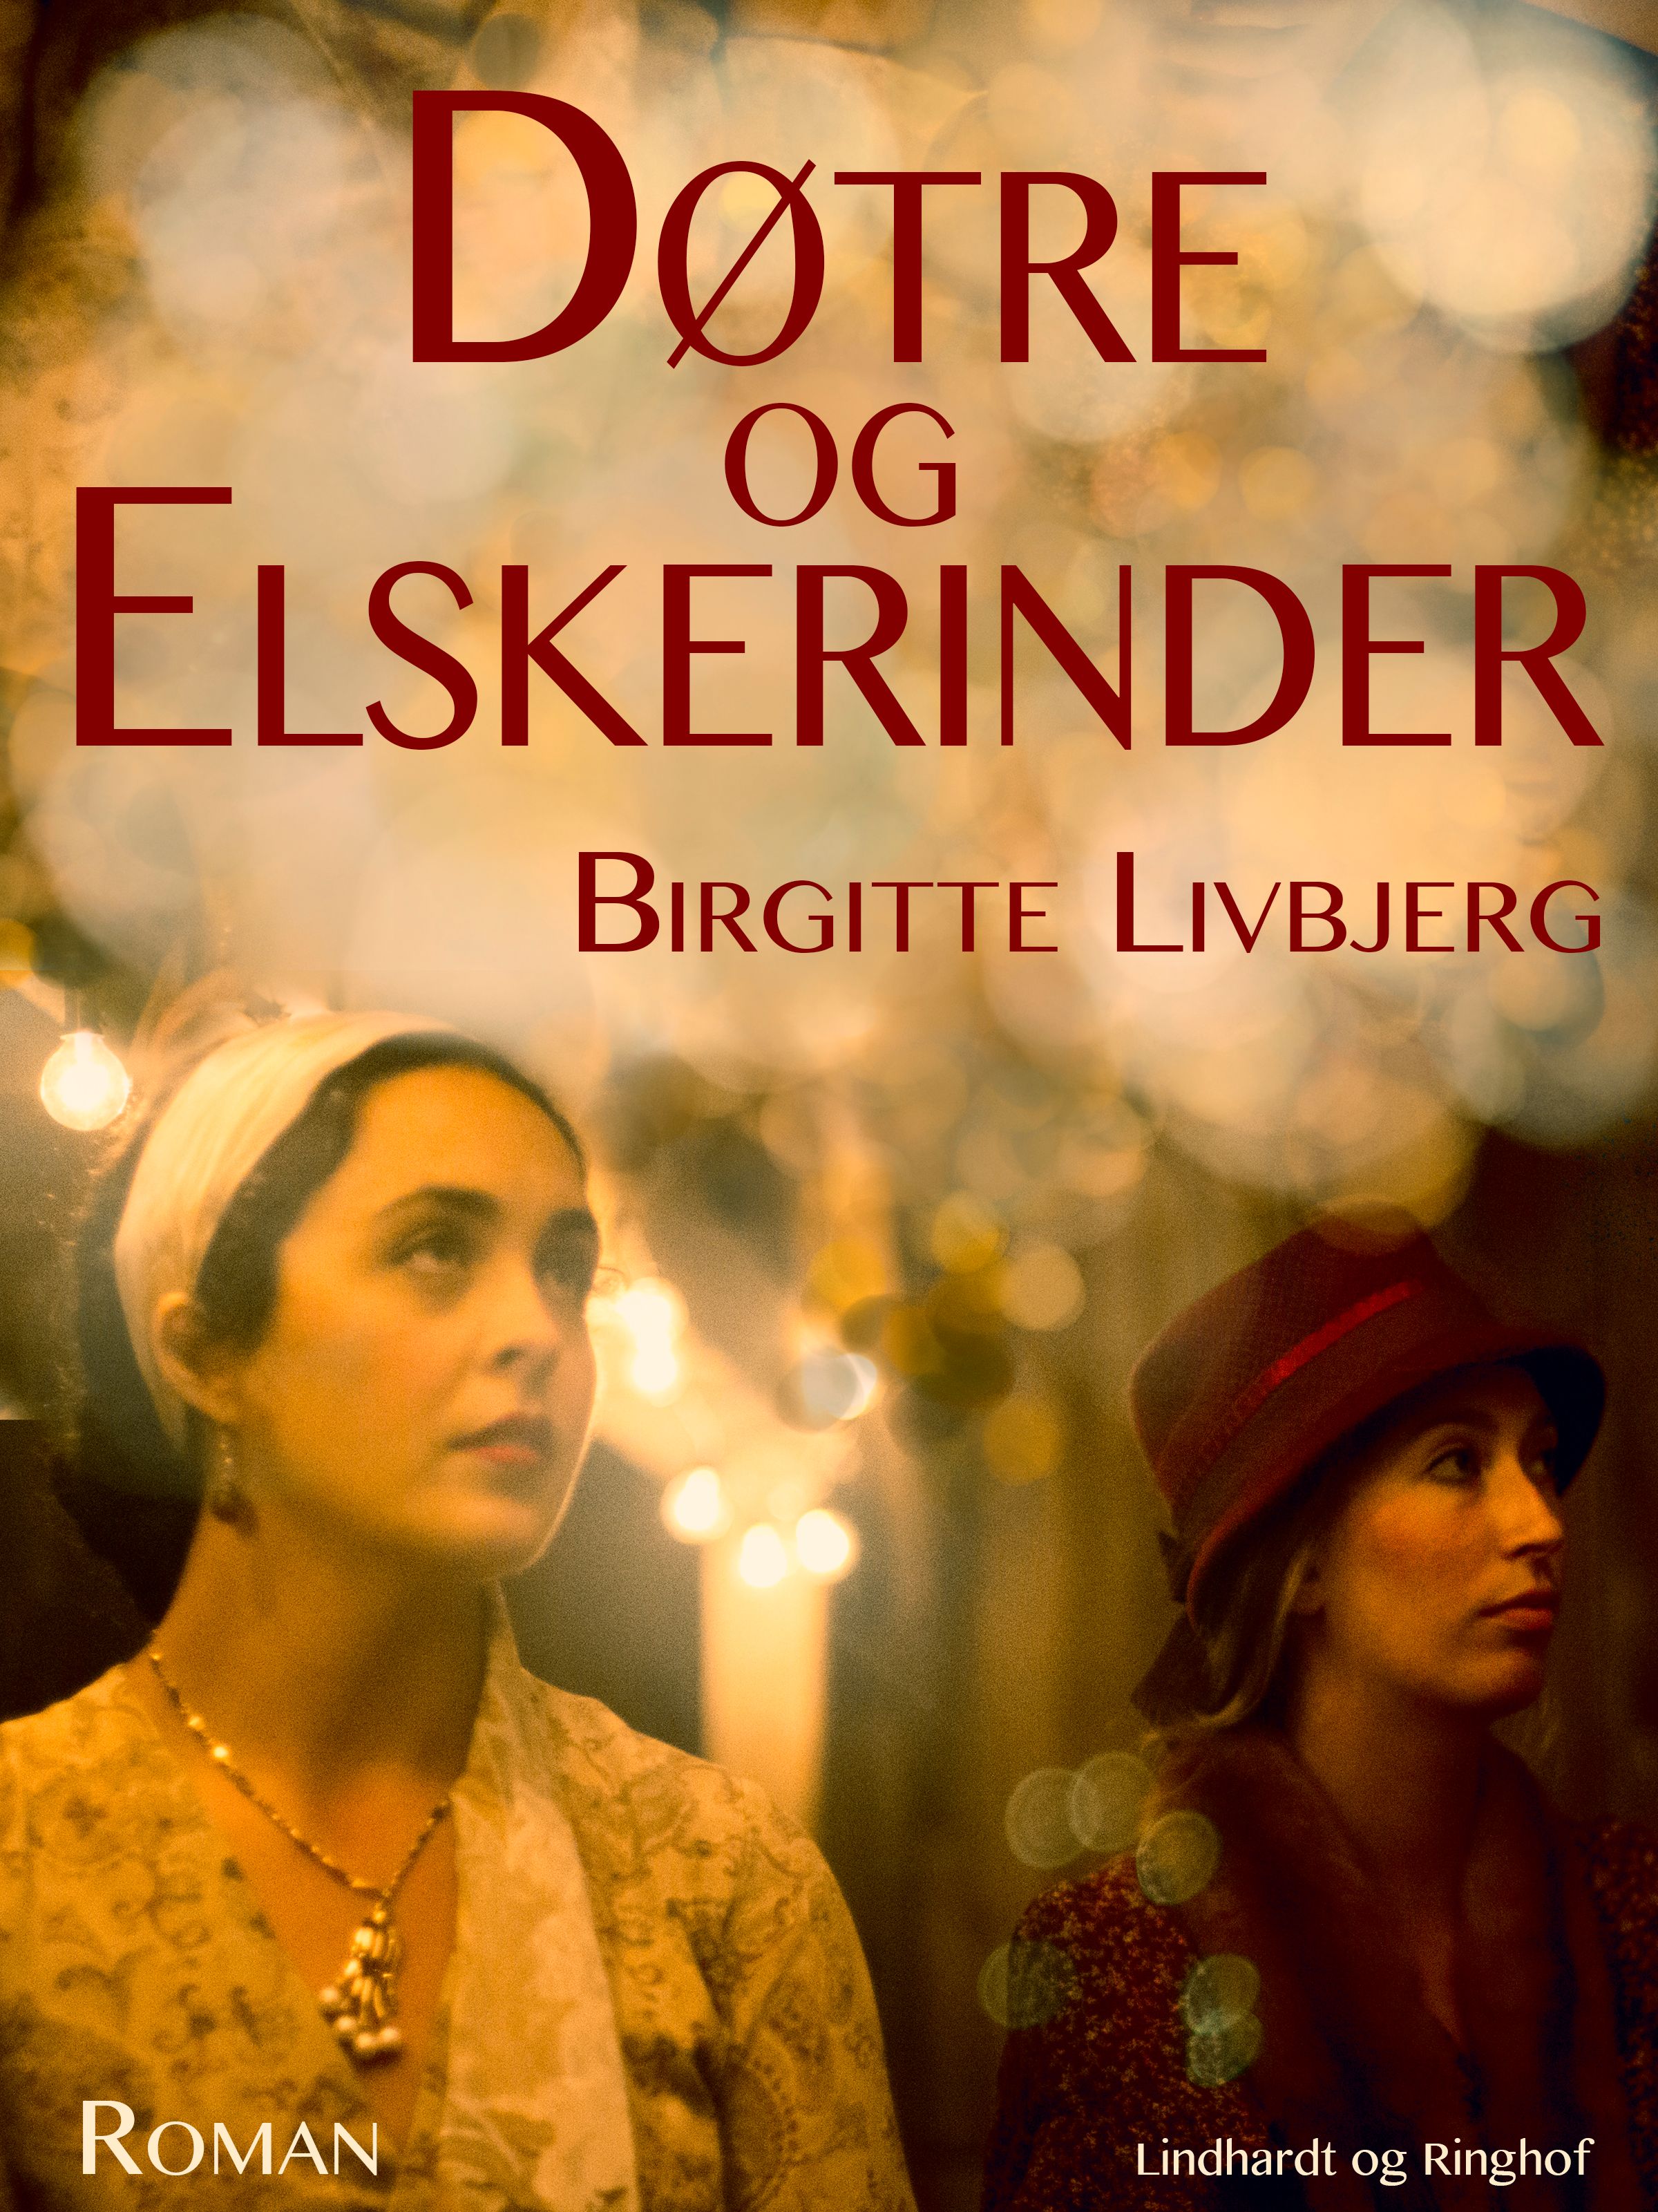 Døtre og elskerinder, ljudbok av Birgitte Livbjerg